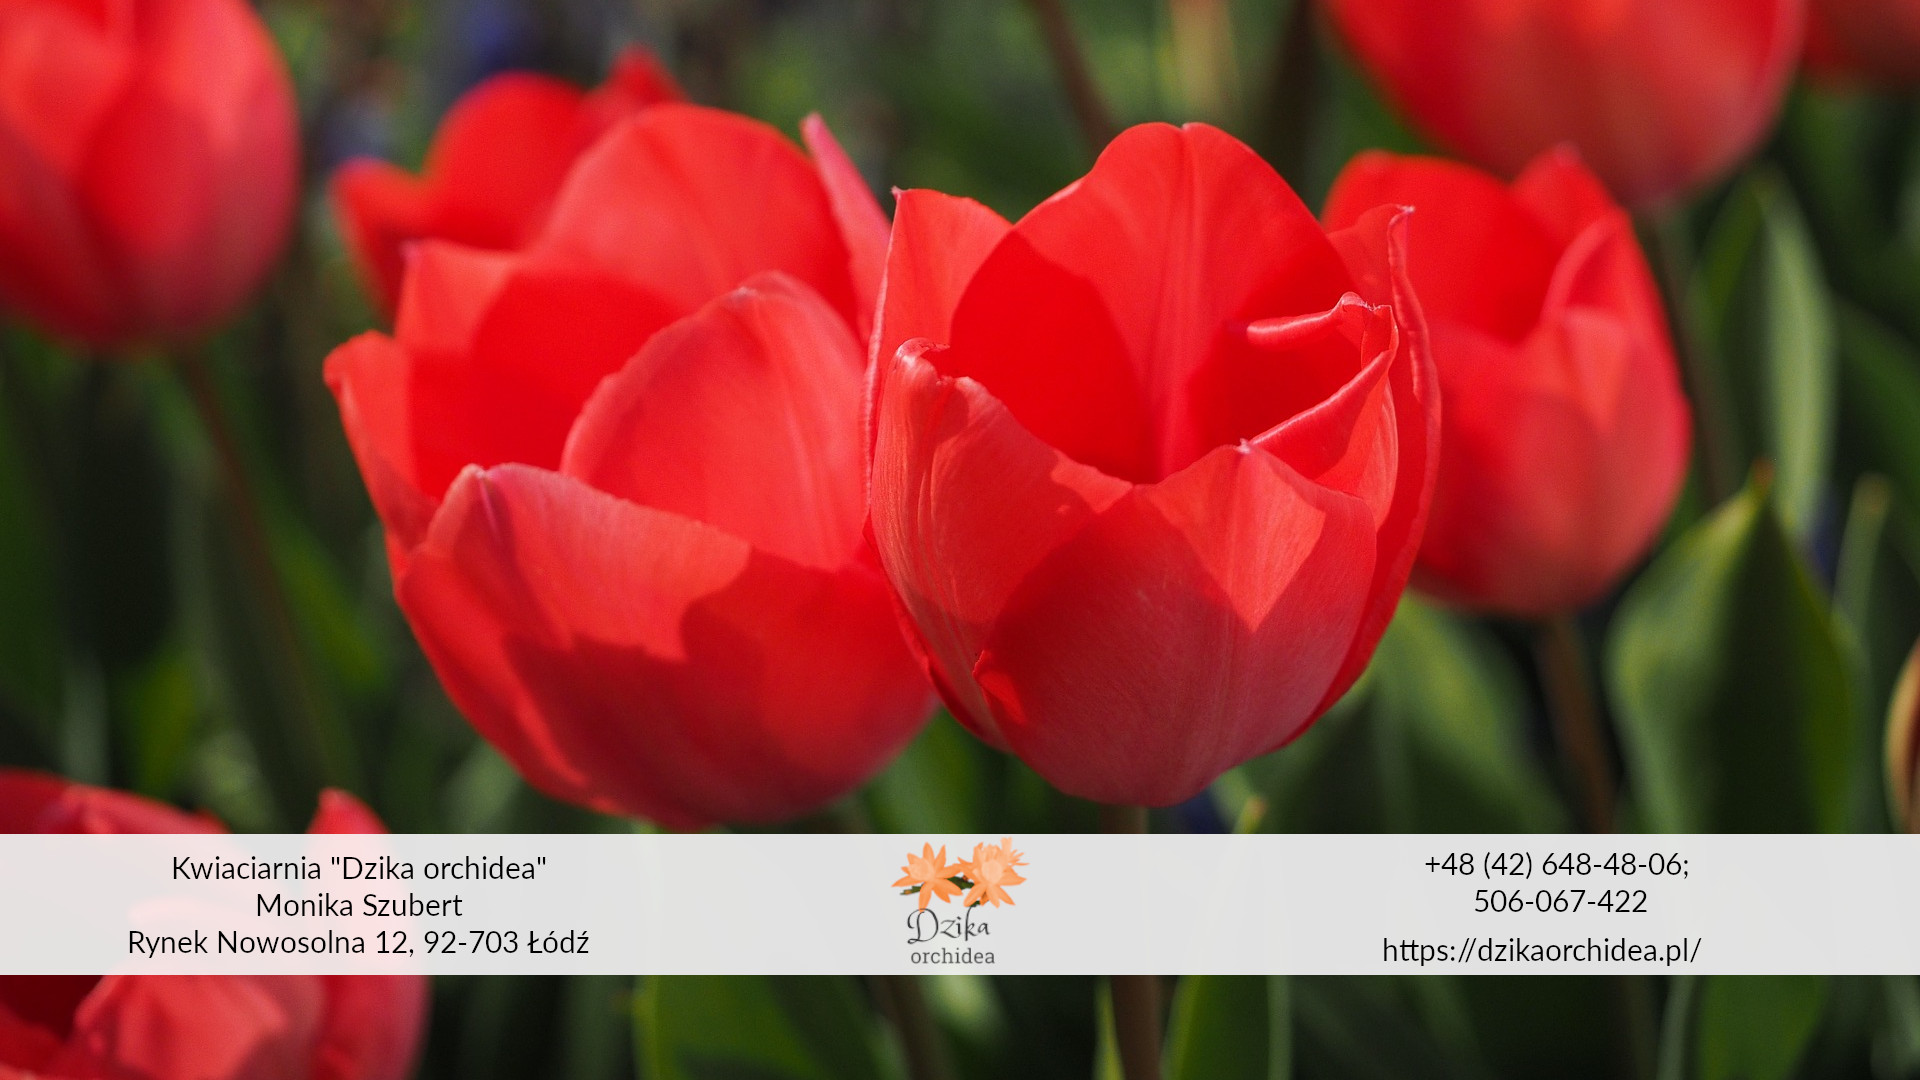 kolory tulipanów i ich znaczenie